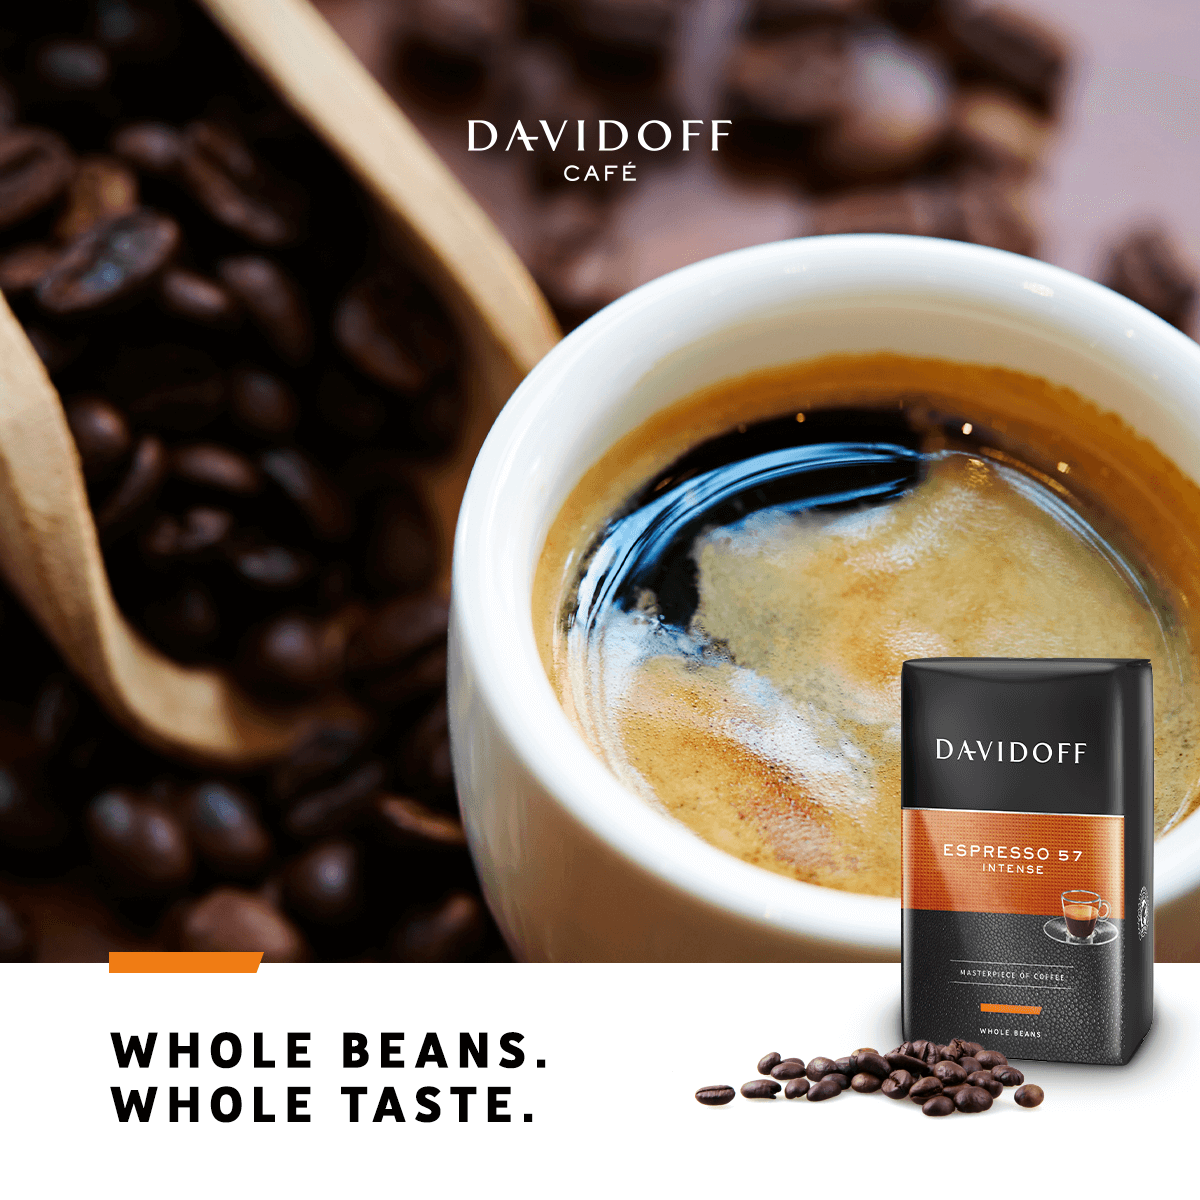 Cà phê nguyên hạt hạng sang Davidoff Café - Espresso 57 - 500g